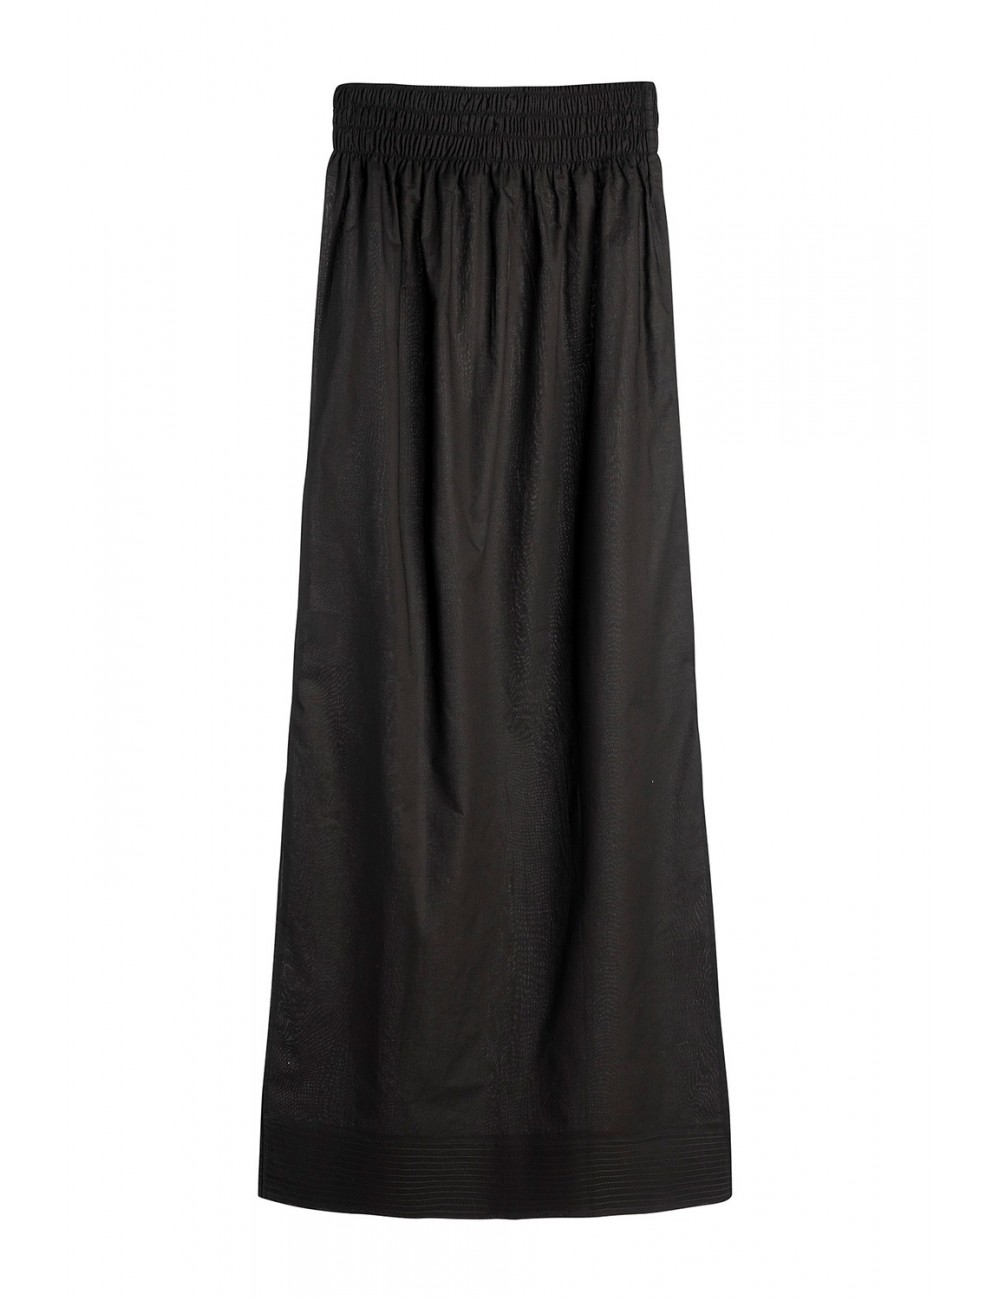 Voile Long Skirt